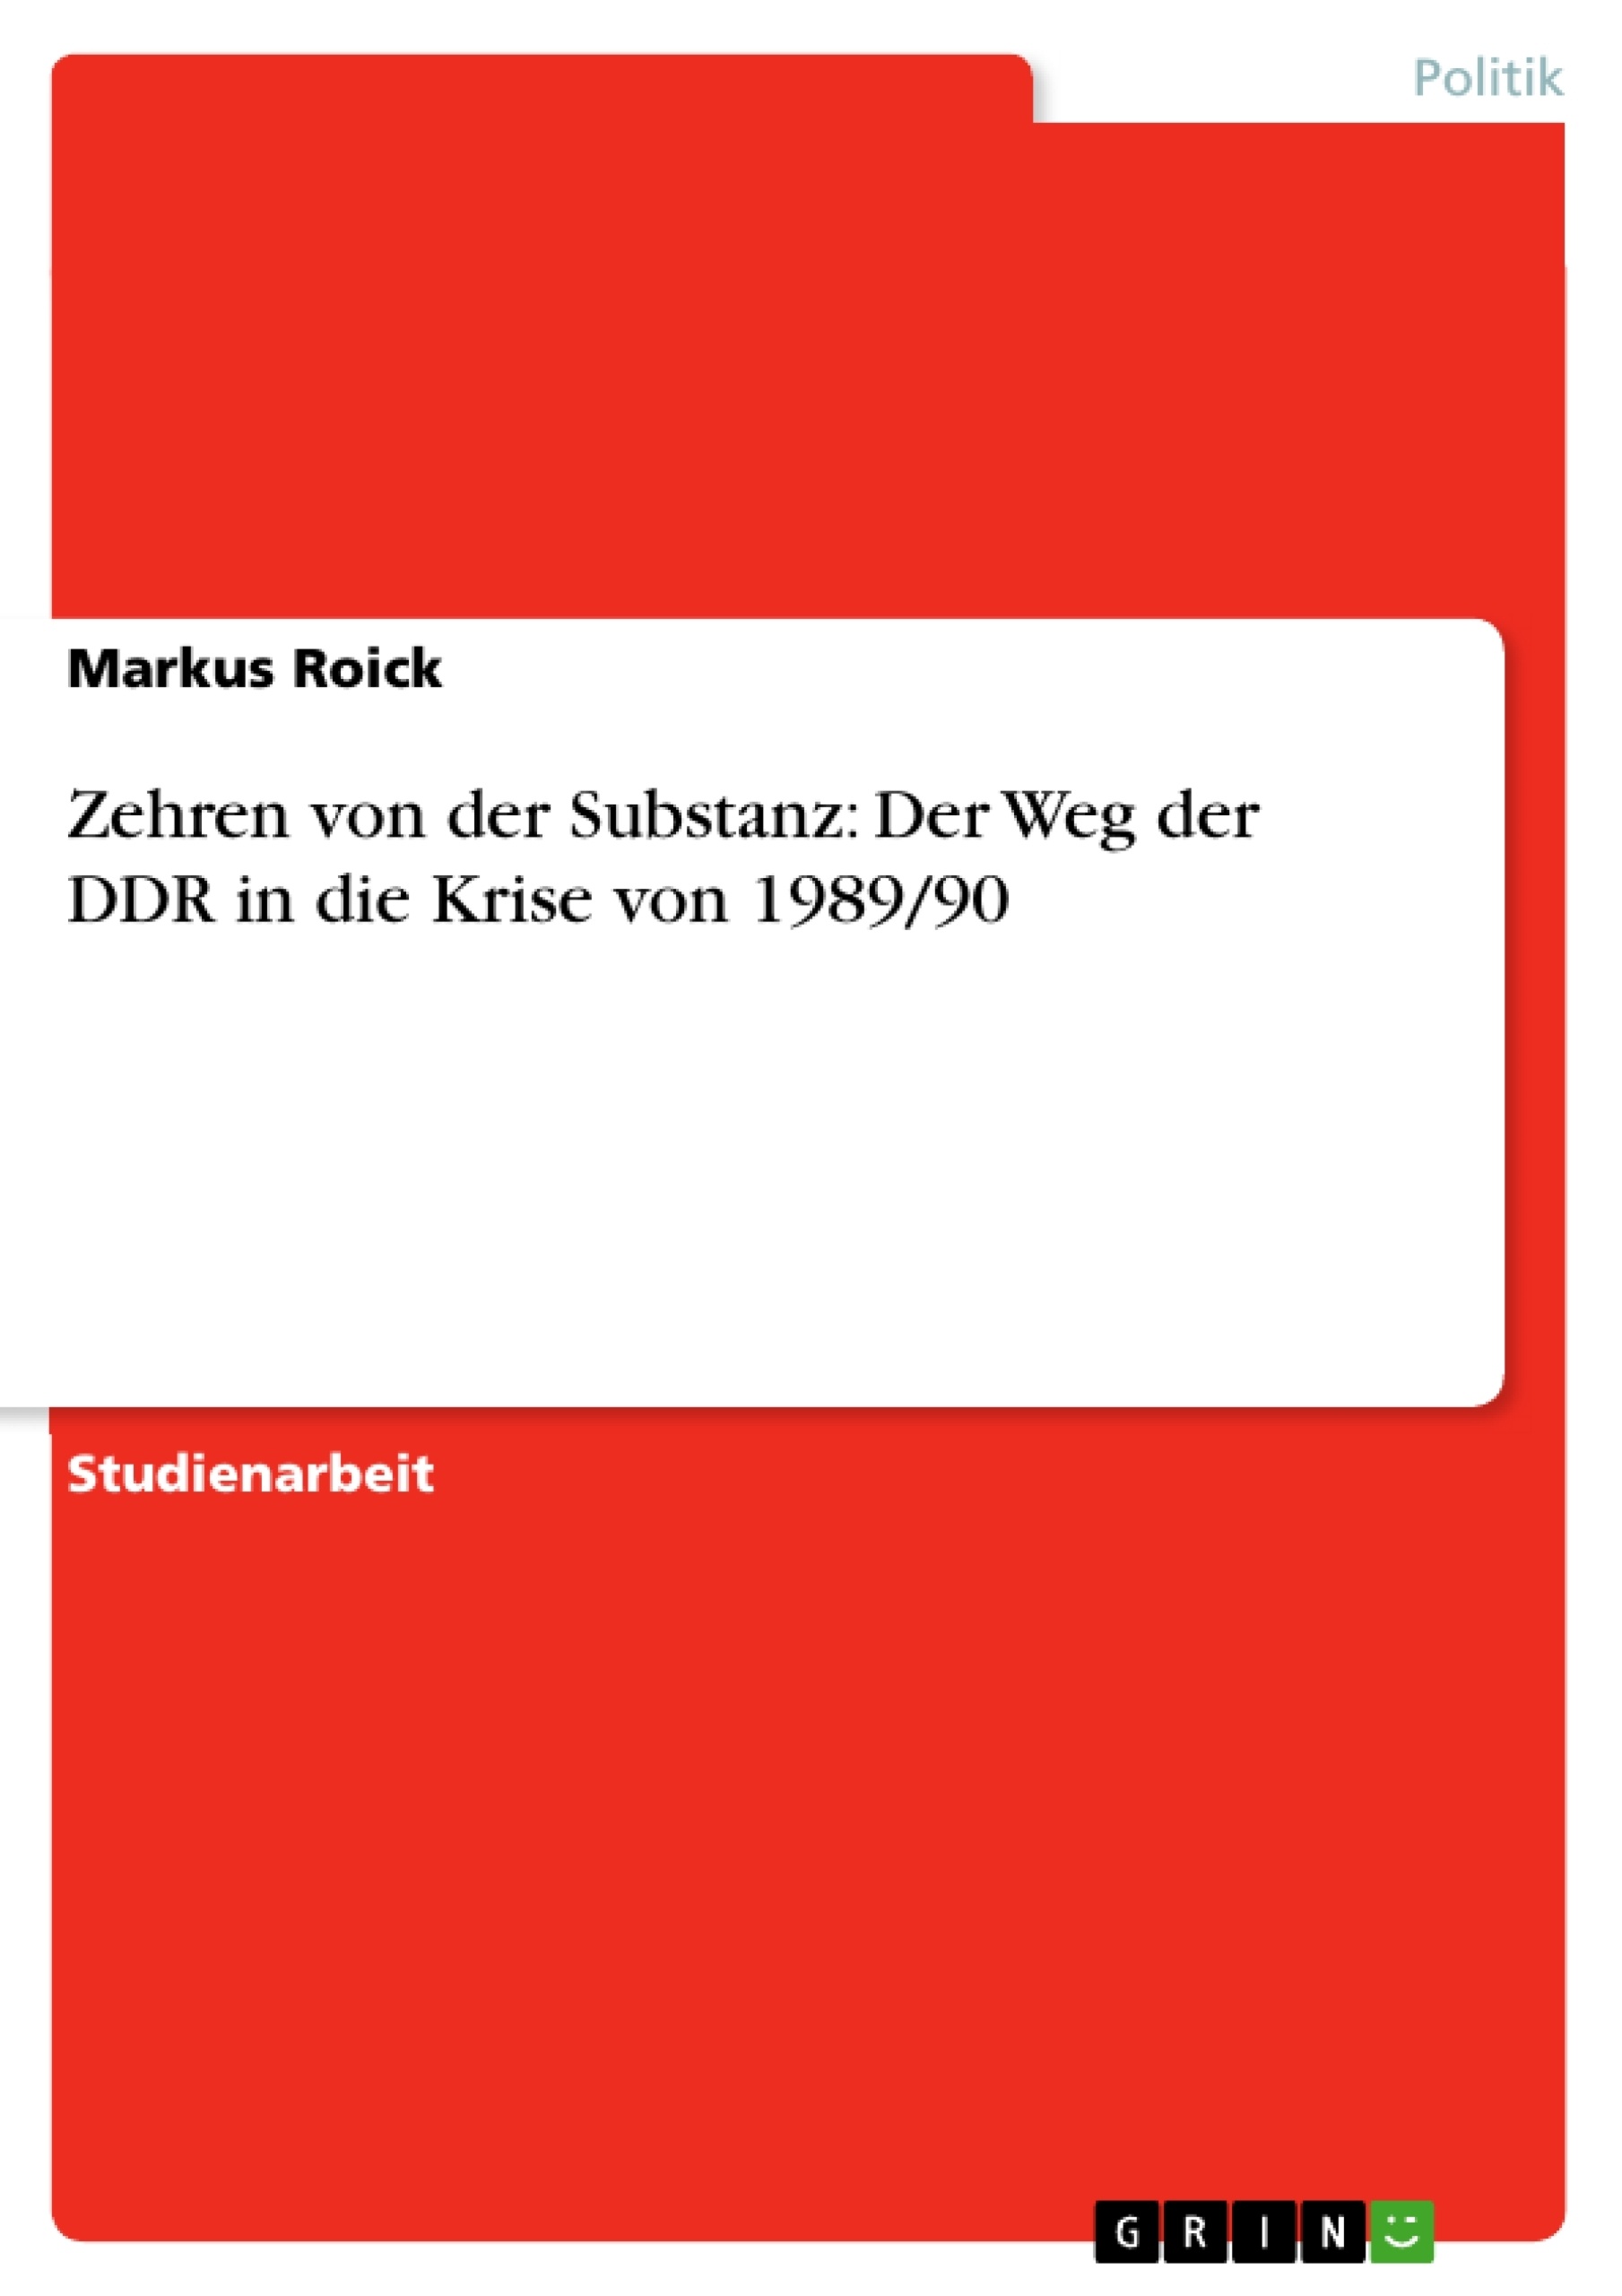 Título: Zehren von der Substanz: Der Weg der DDR in die Krise von 1989/90